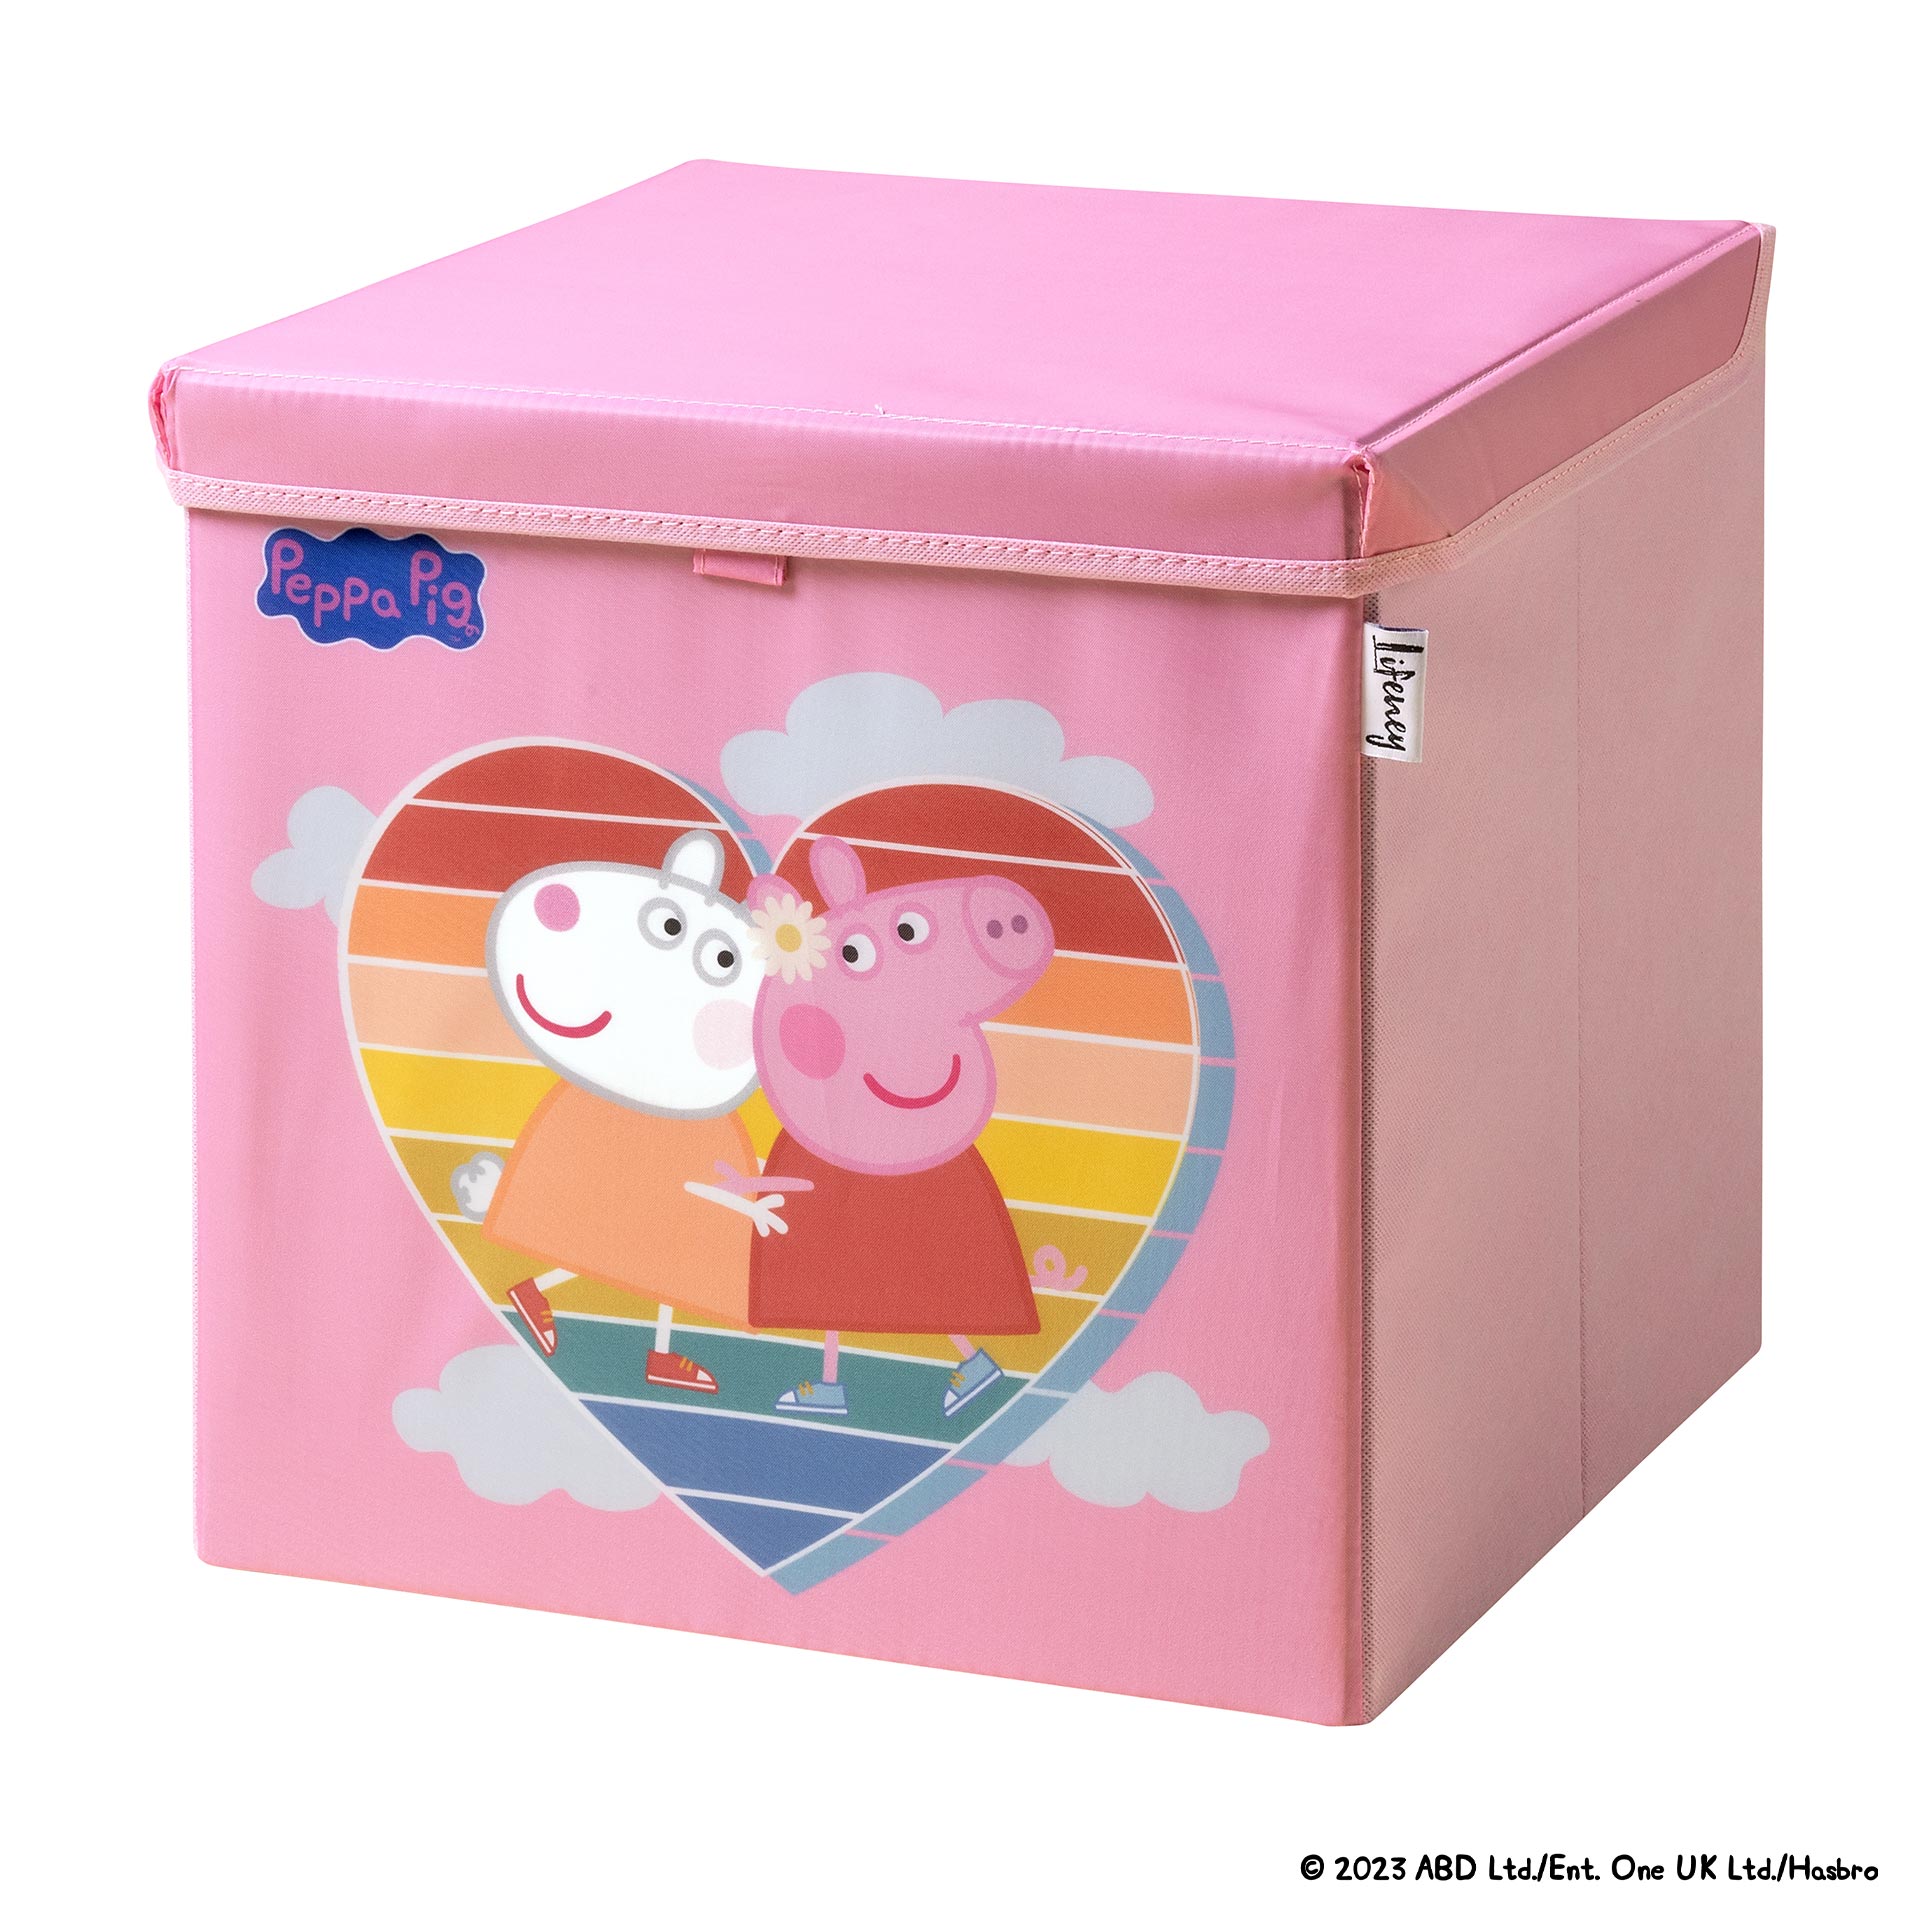 LifeneyPeppa Pig Caja de Almacenaje – Práctica y Elegante, Ideal para Organizar y Almacenar Objetos, Diseño Único, Calidad Superior, Garantía de 5 Años